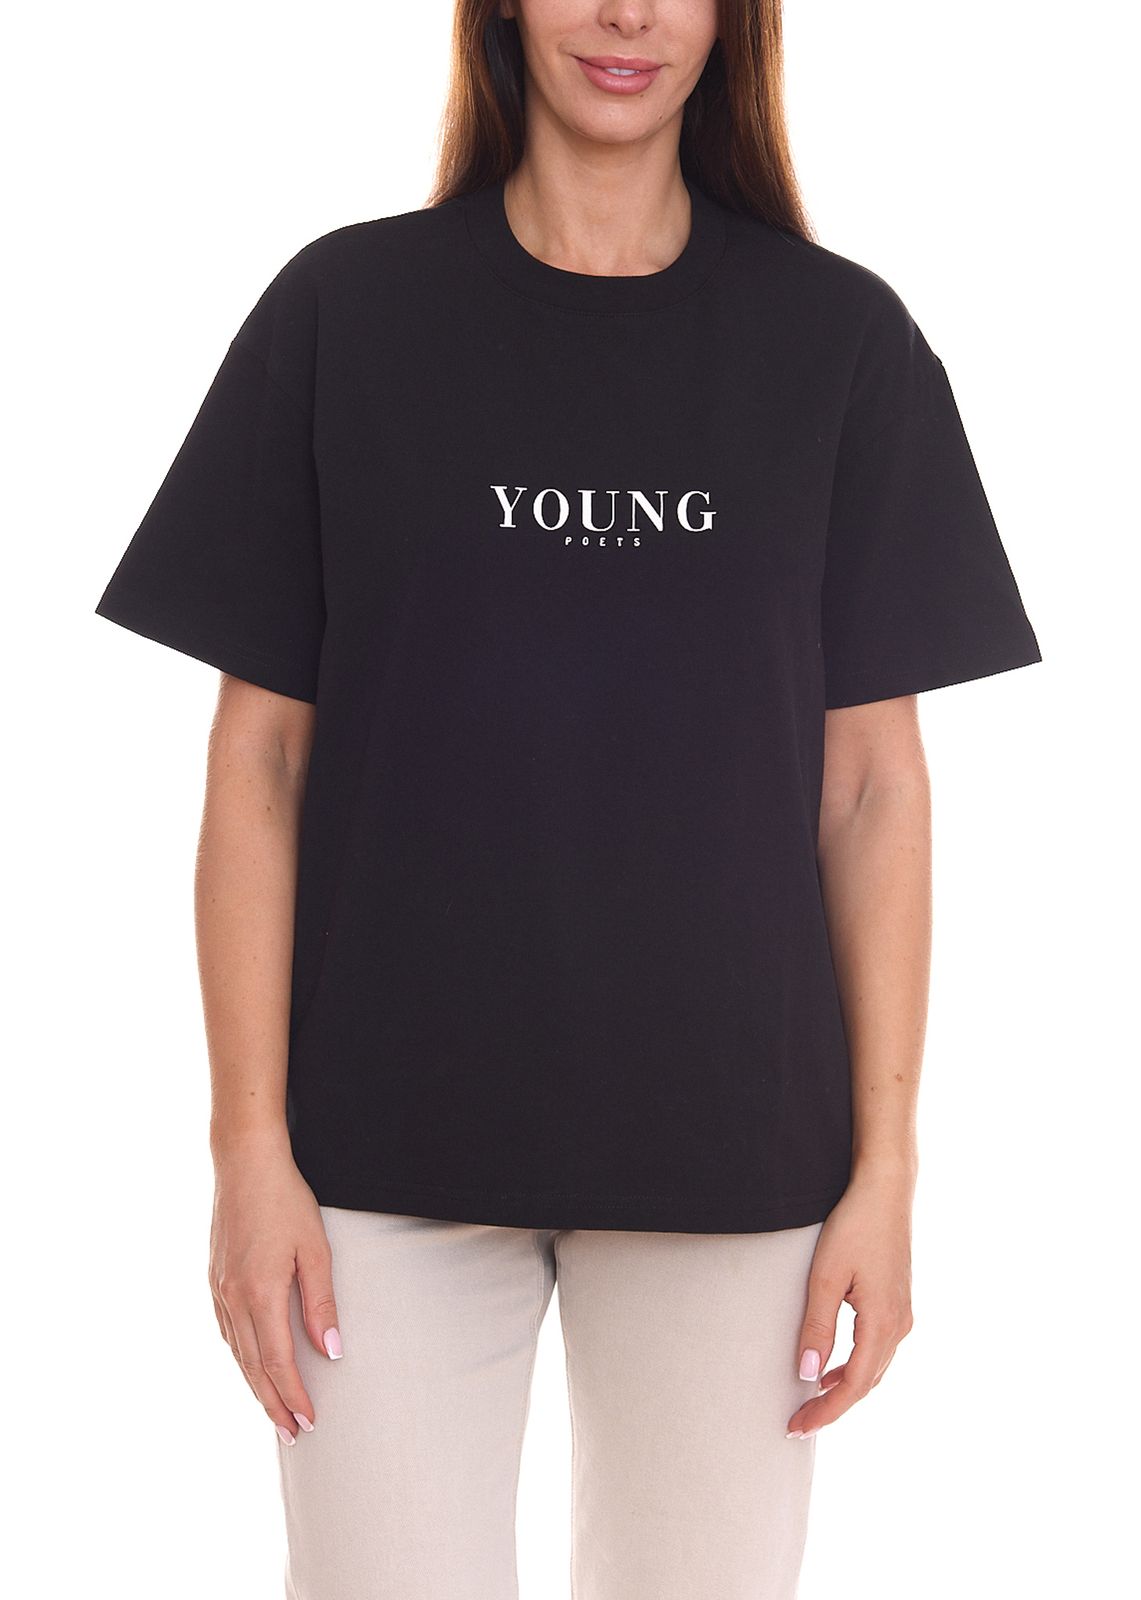 YOUNG POETS Damen nachhaltiges Baumwoll-Shirt Rundhals-Shirt mit großem Marken-Schriftzug 108169 Schwarz von YOUNG POETS